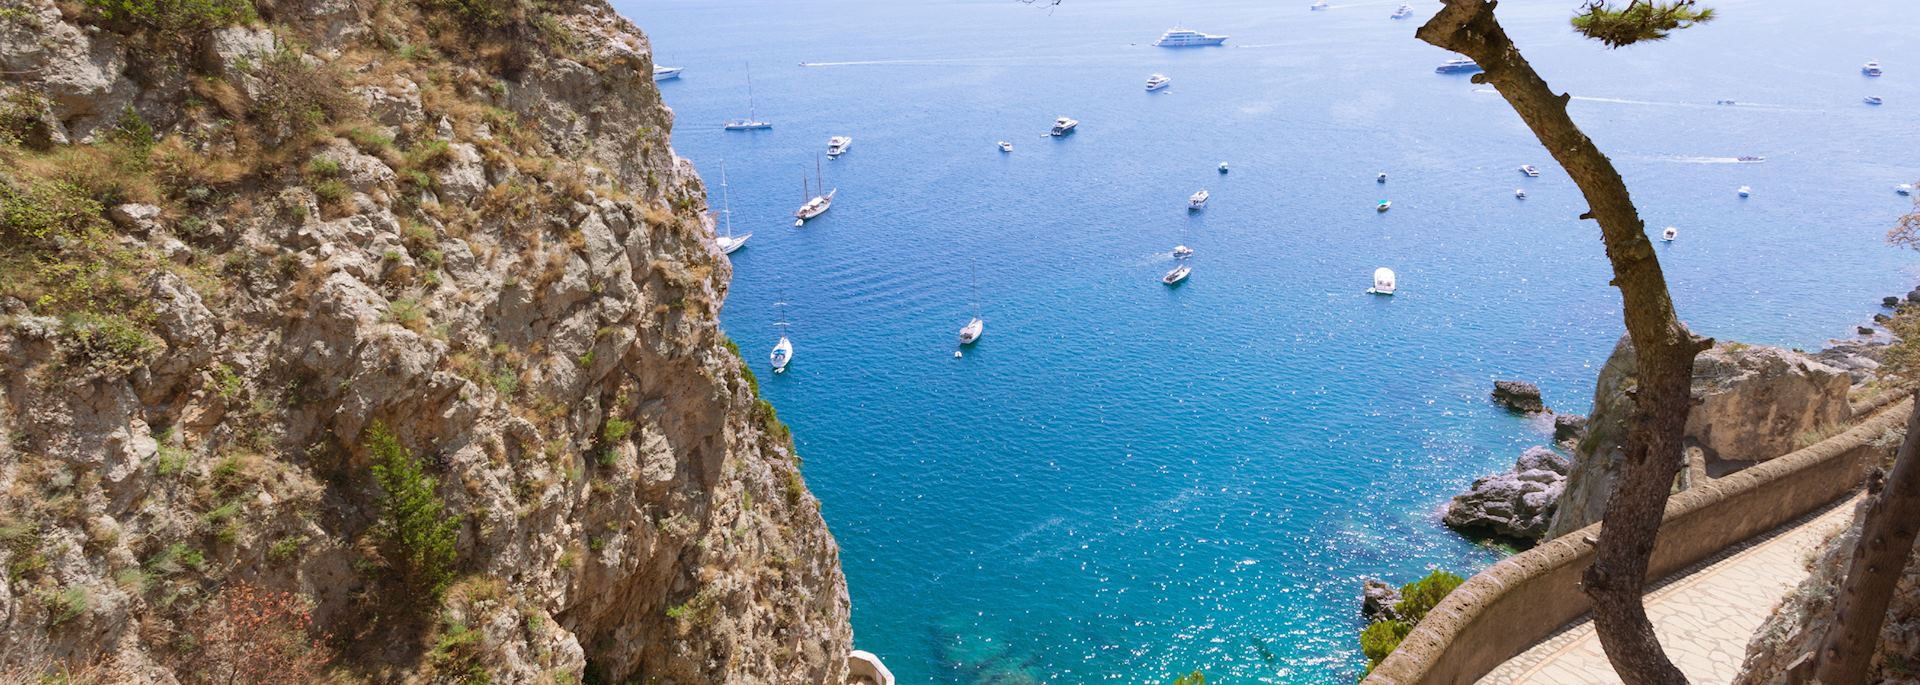 Spectacular coastline in Capri